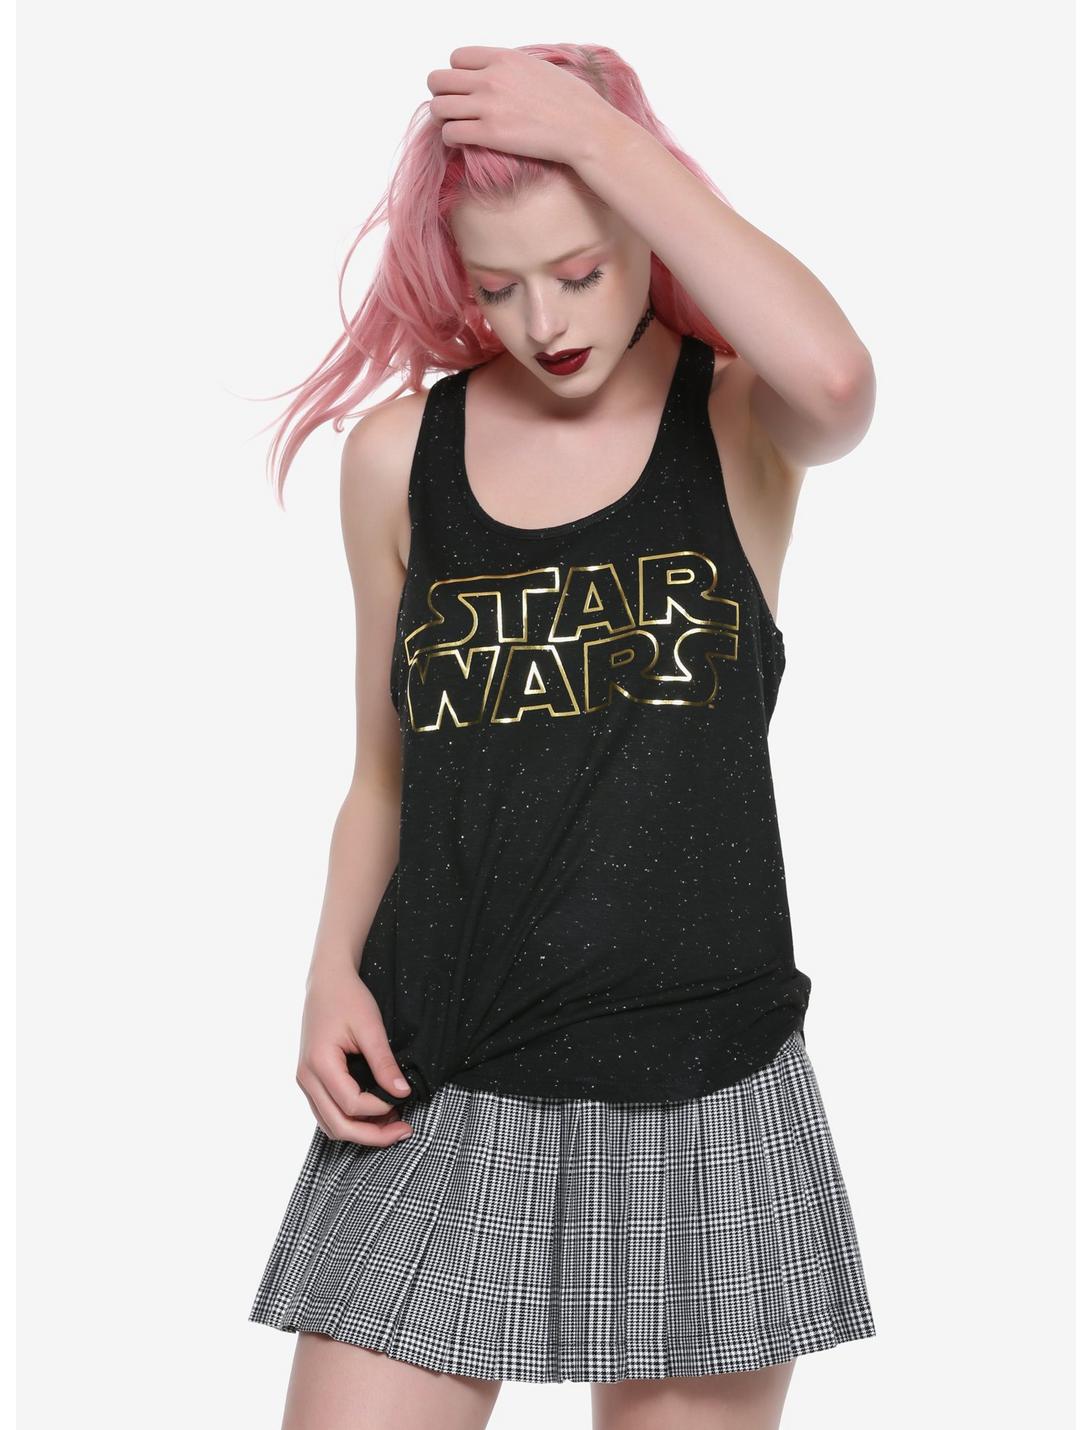 Star Wars Foil Logo Speckled Girls Tank Top, GOLD, hi-res